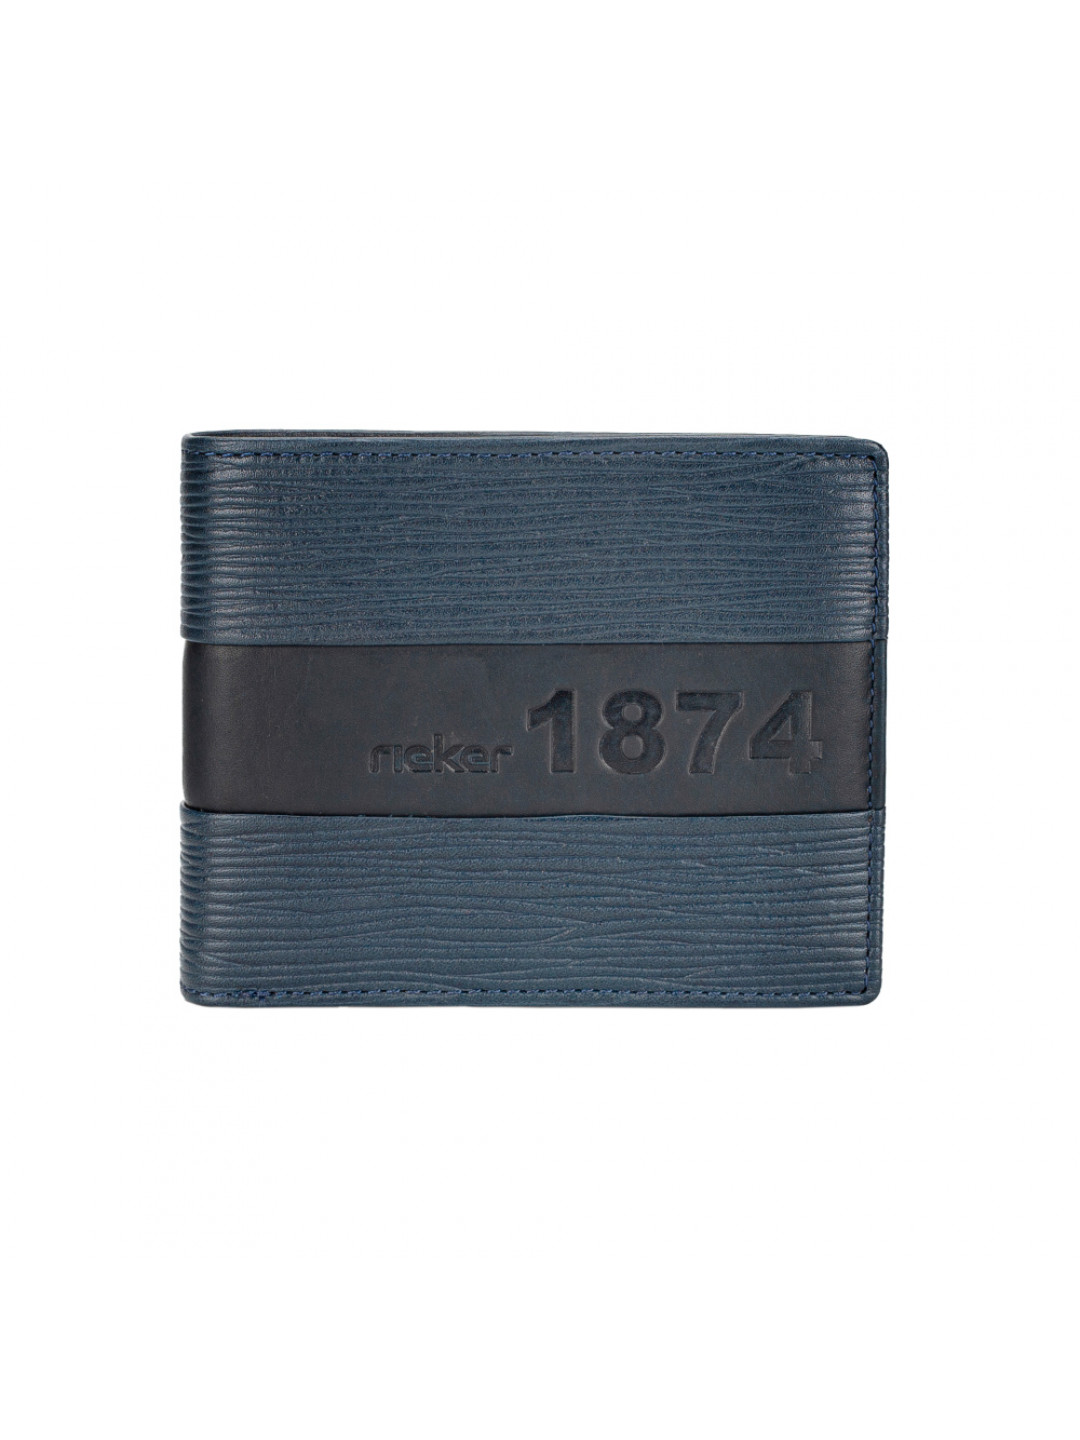 Pánská peněženka RIEKER 1019 modrá W3